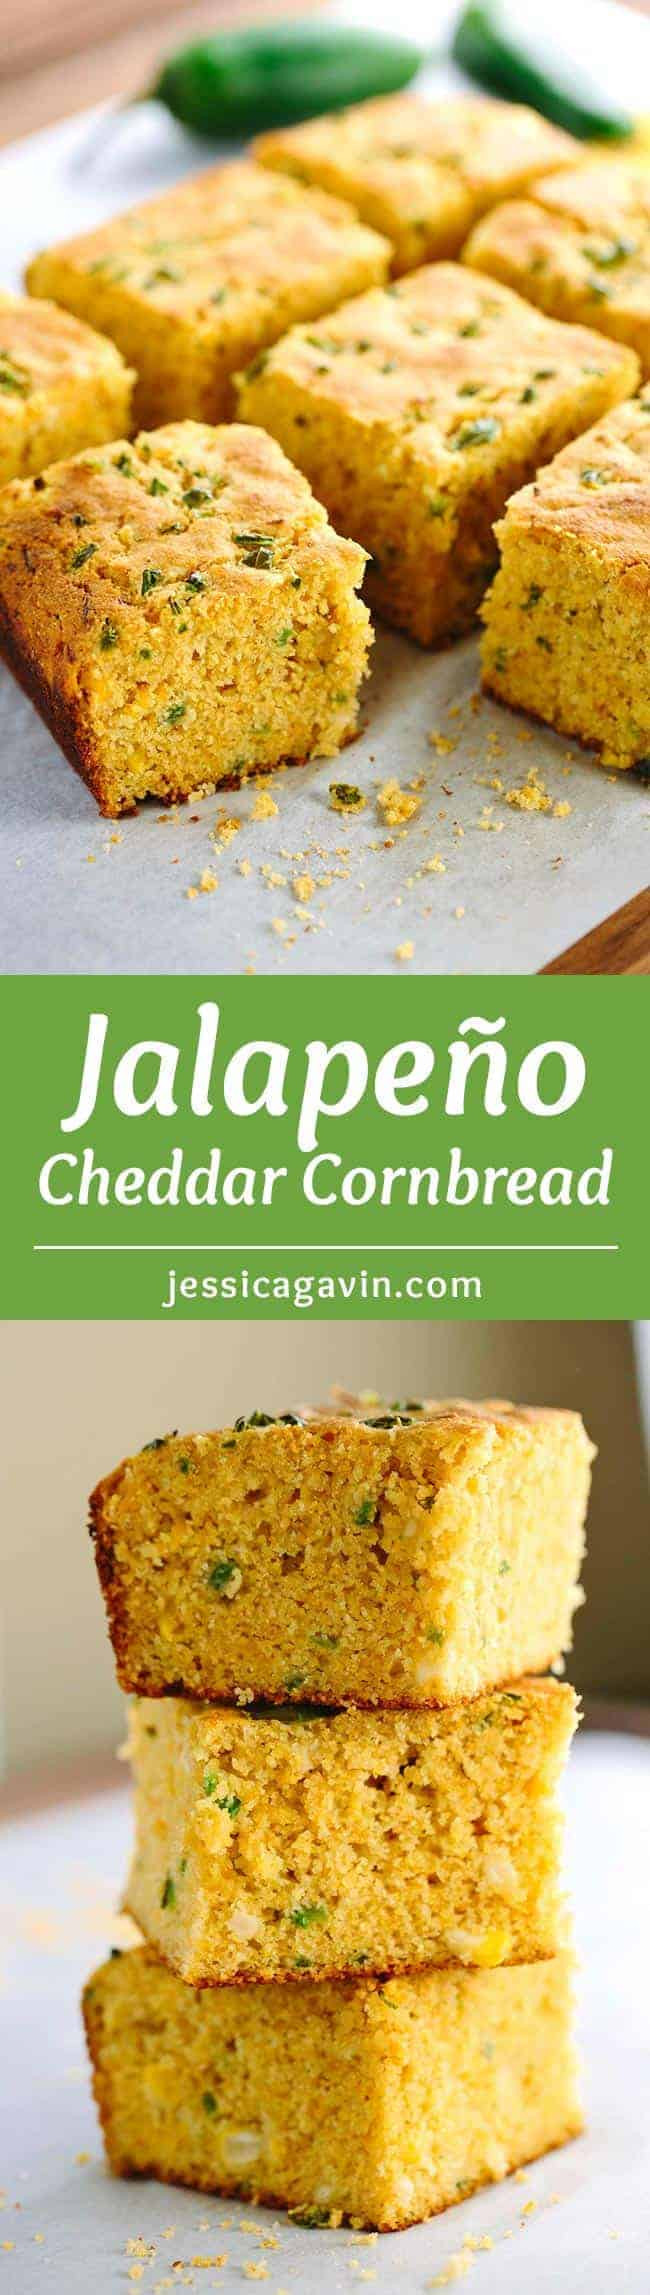 Whole Grain Cornbread
 Whole Grain Jalapeno Cheddar Cornbread Recipe Jessica Gavin